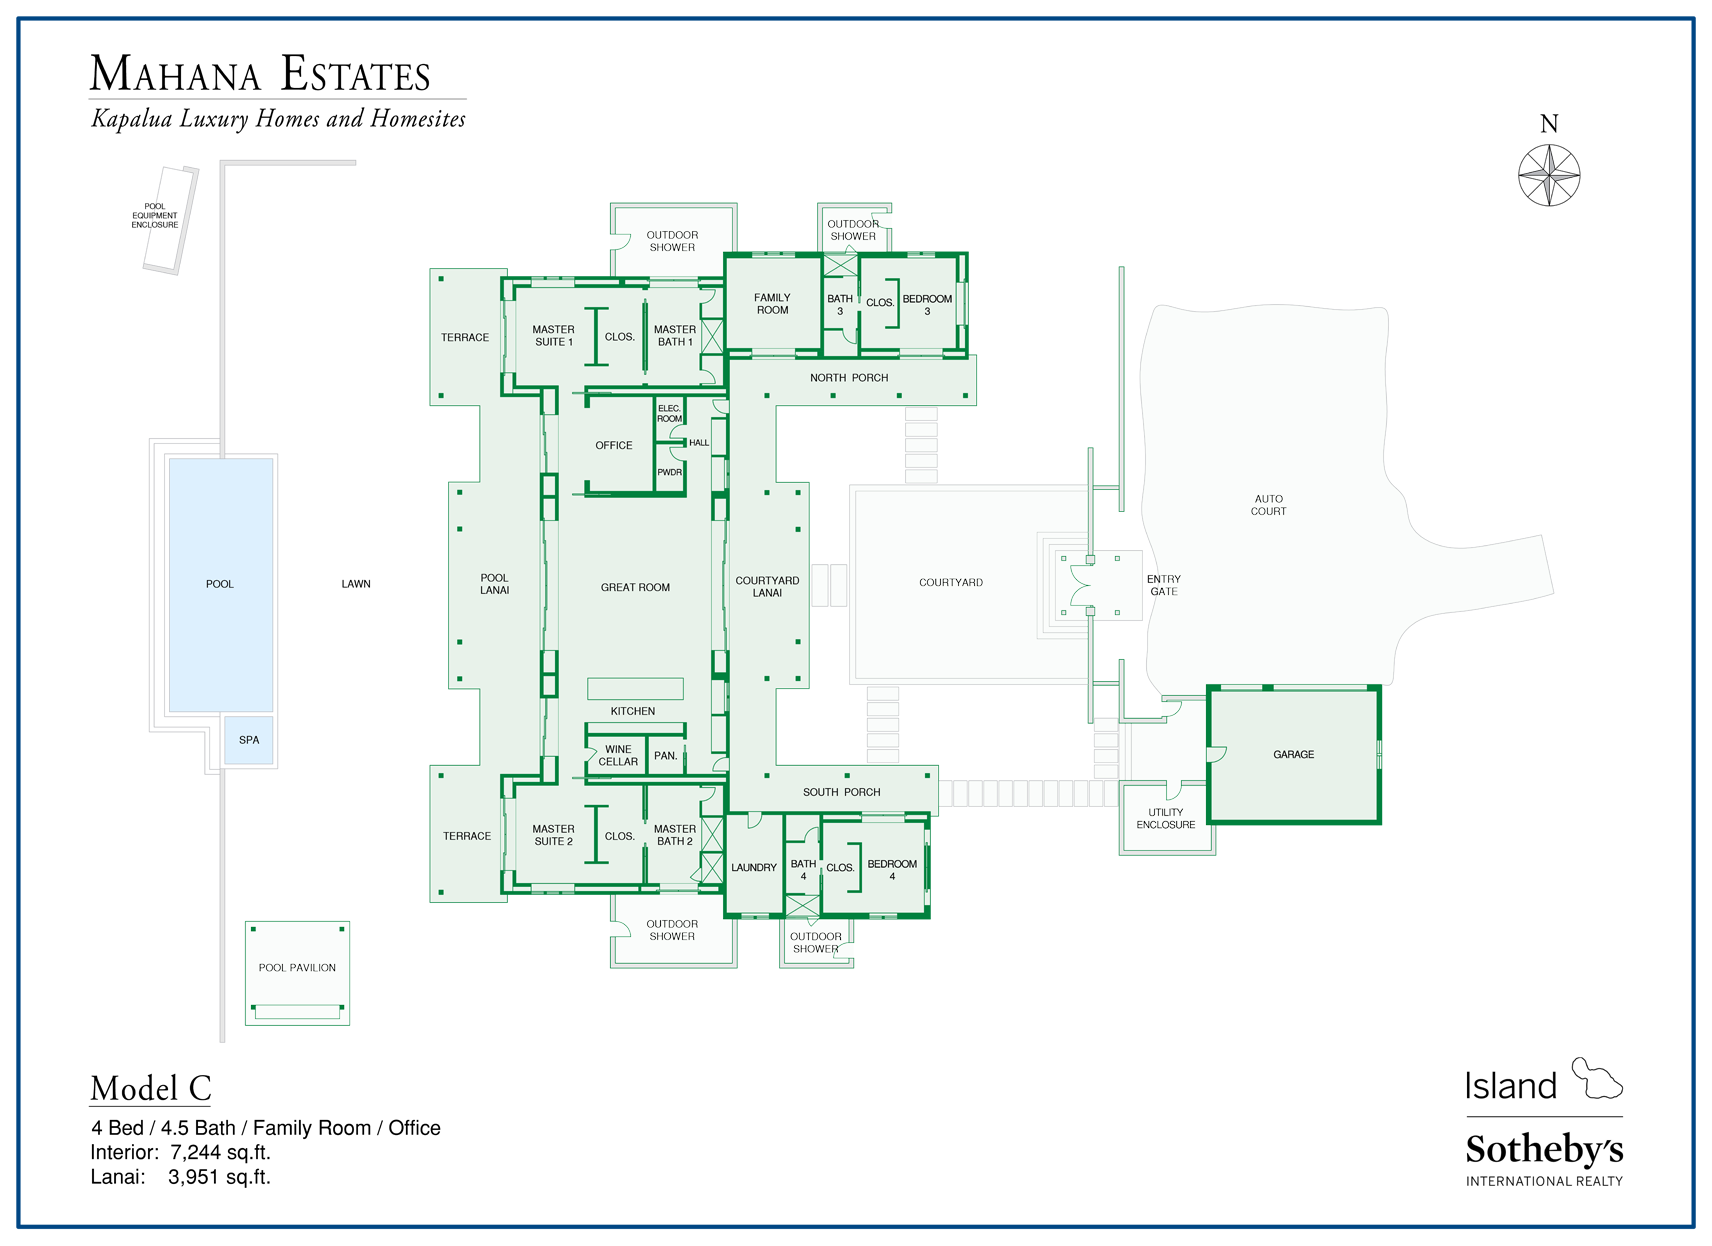 model C floor plan mahana estates